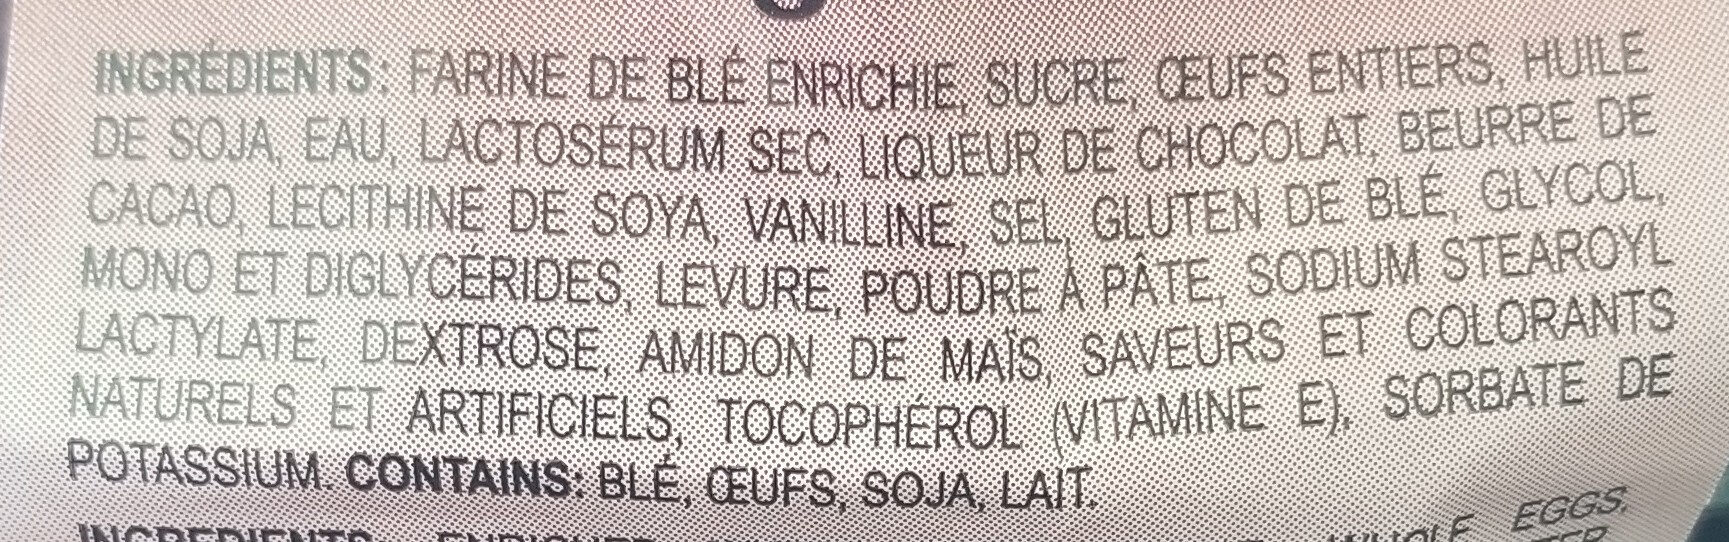 Gateau couronne Sacré chocolat - Ingredients - fr